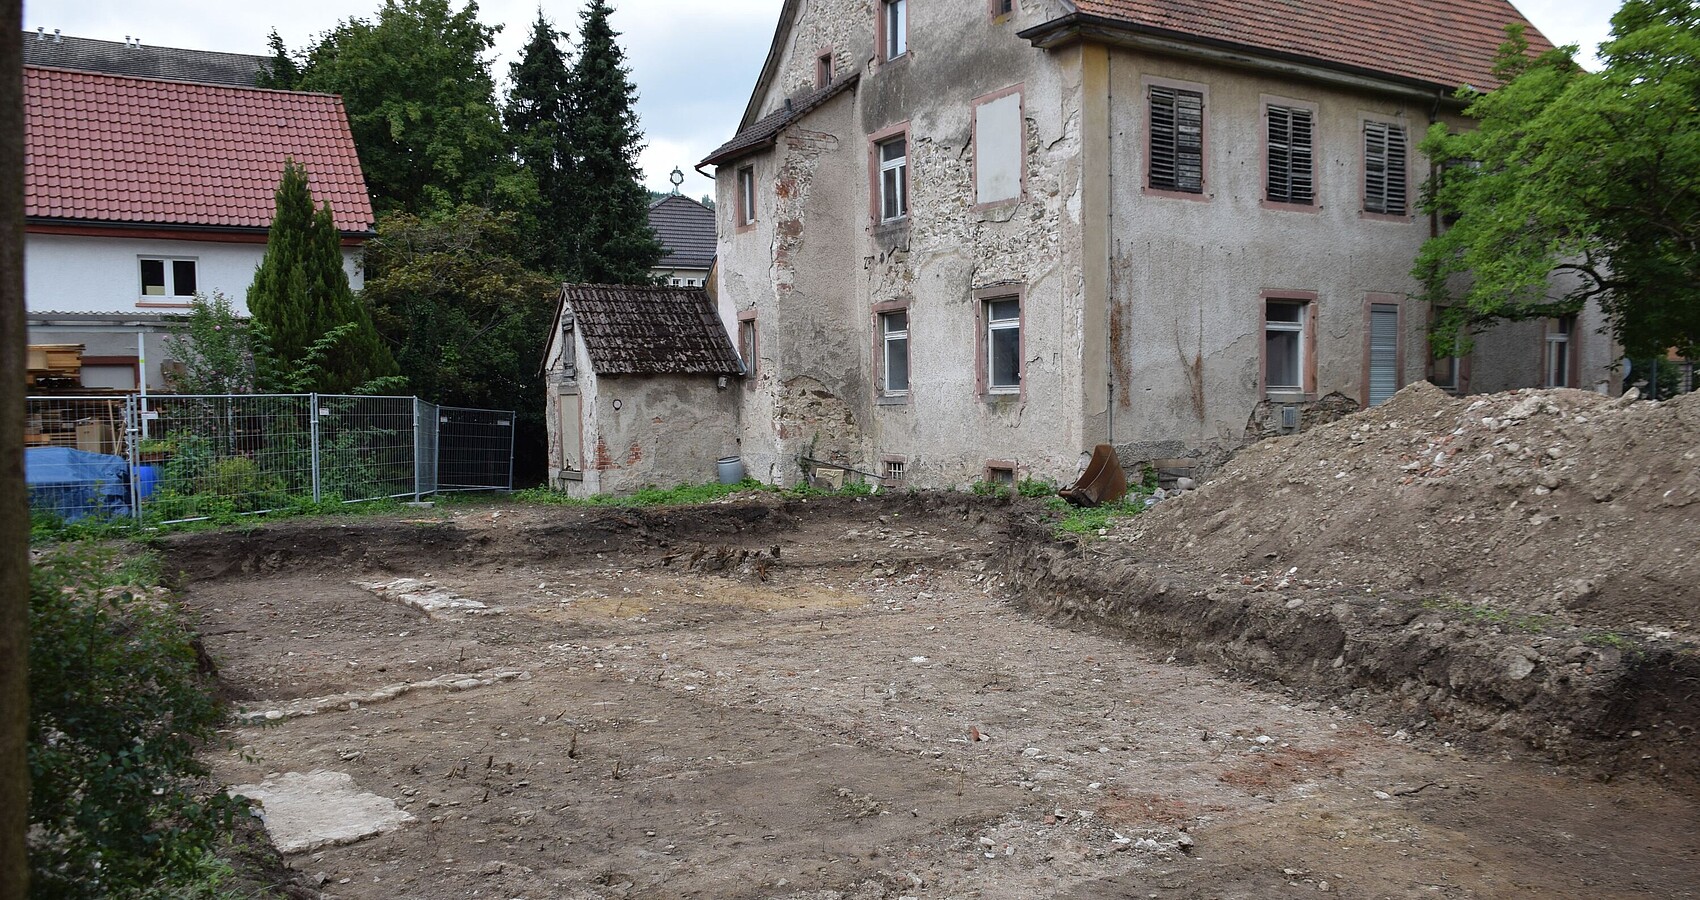 Bild zeigt die Ausgrabungsstätte inmitten von Häusern